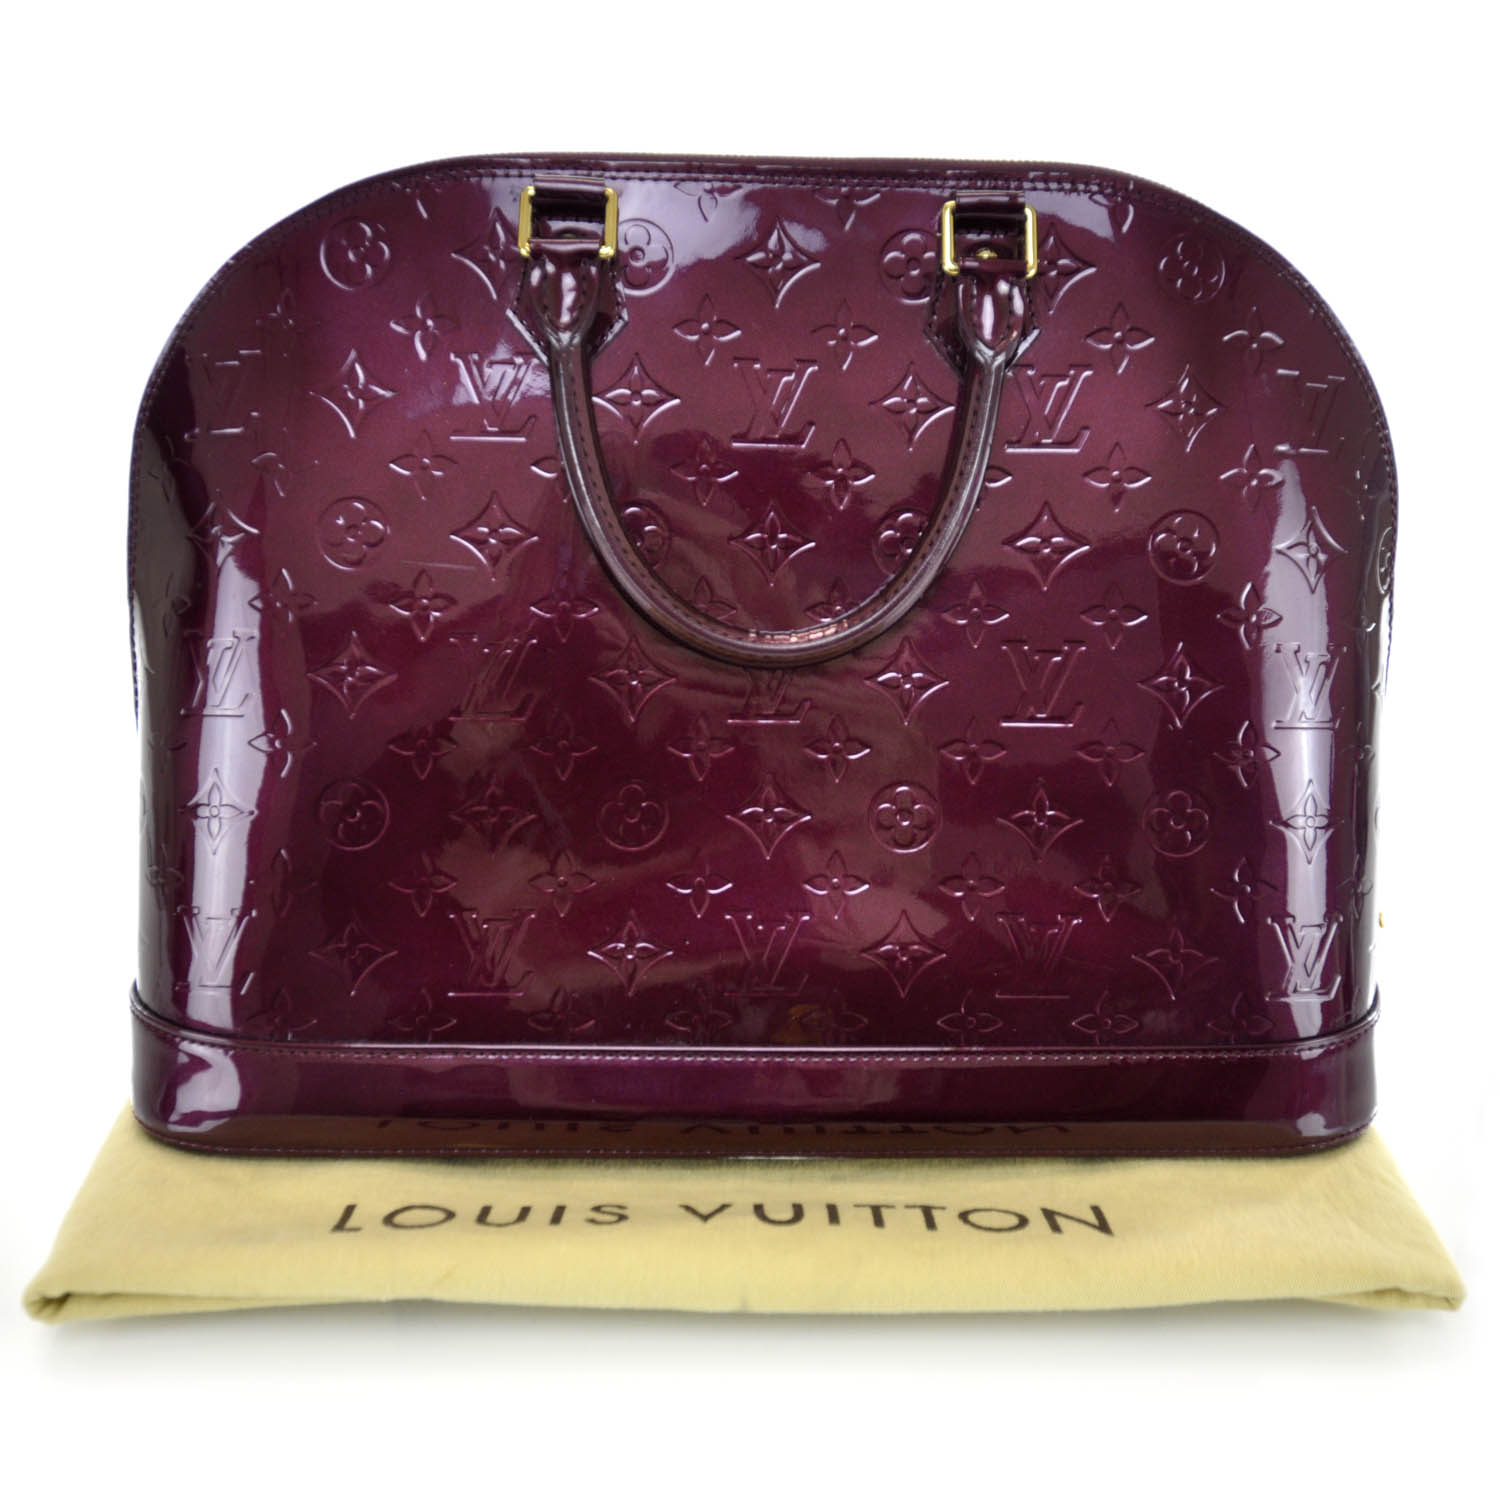 Louis Vuitton Monogram Vernis Alma GM in purple patent leather ref